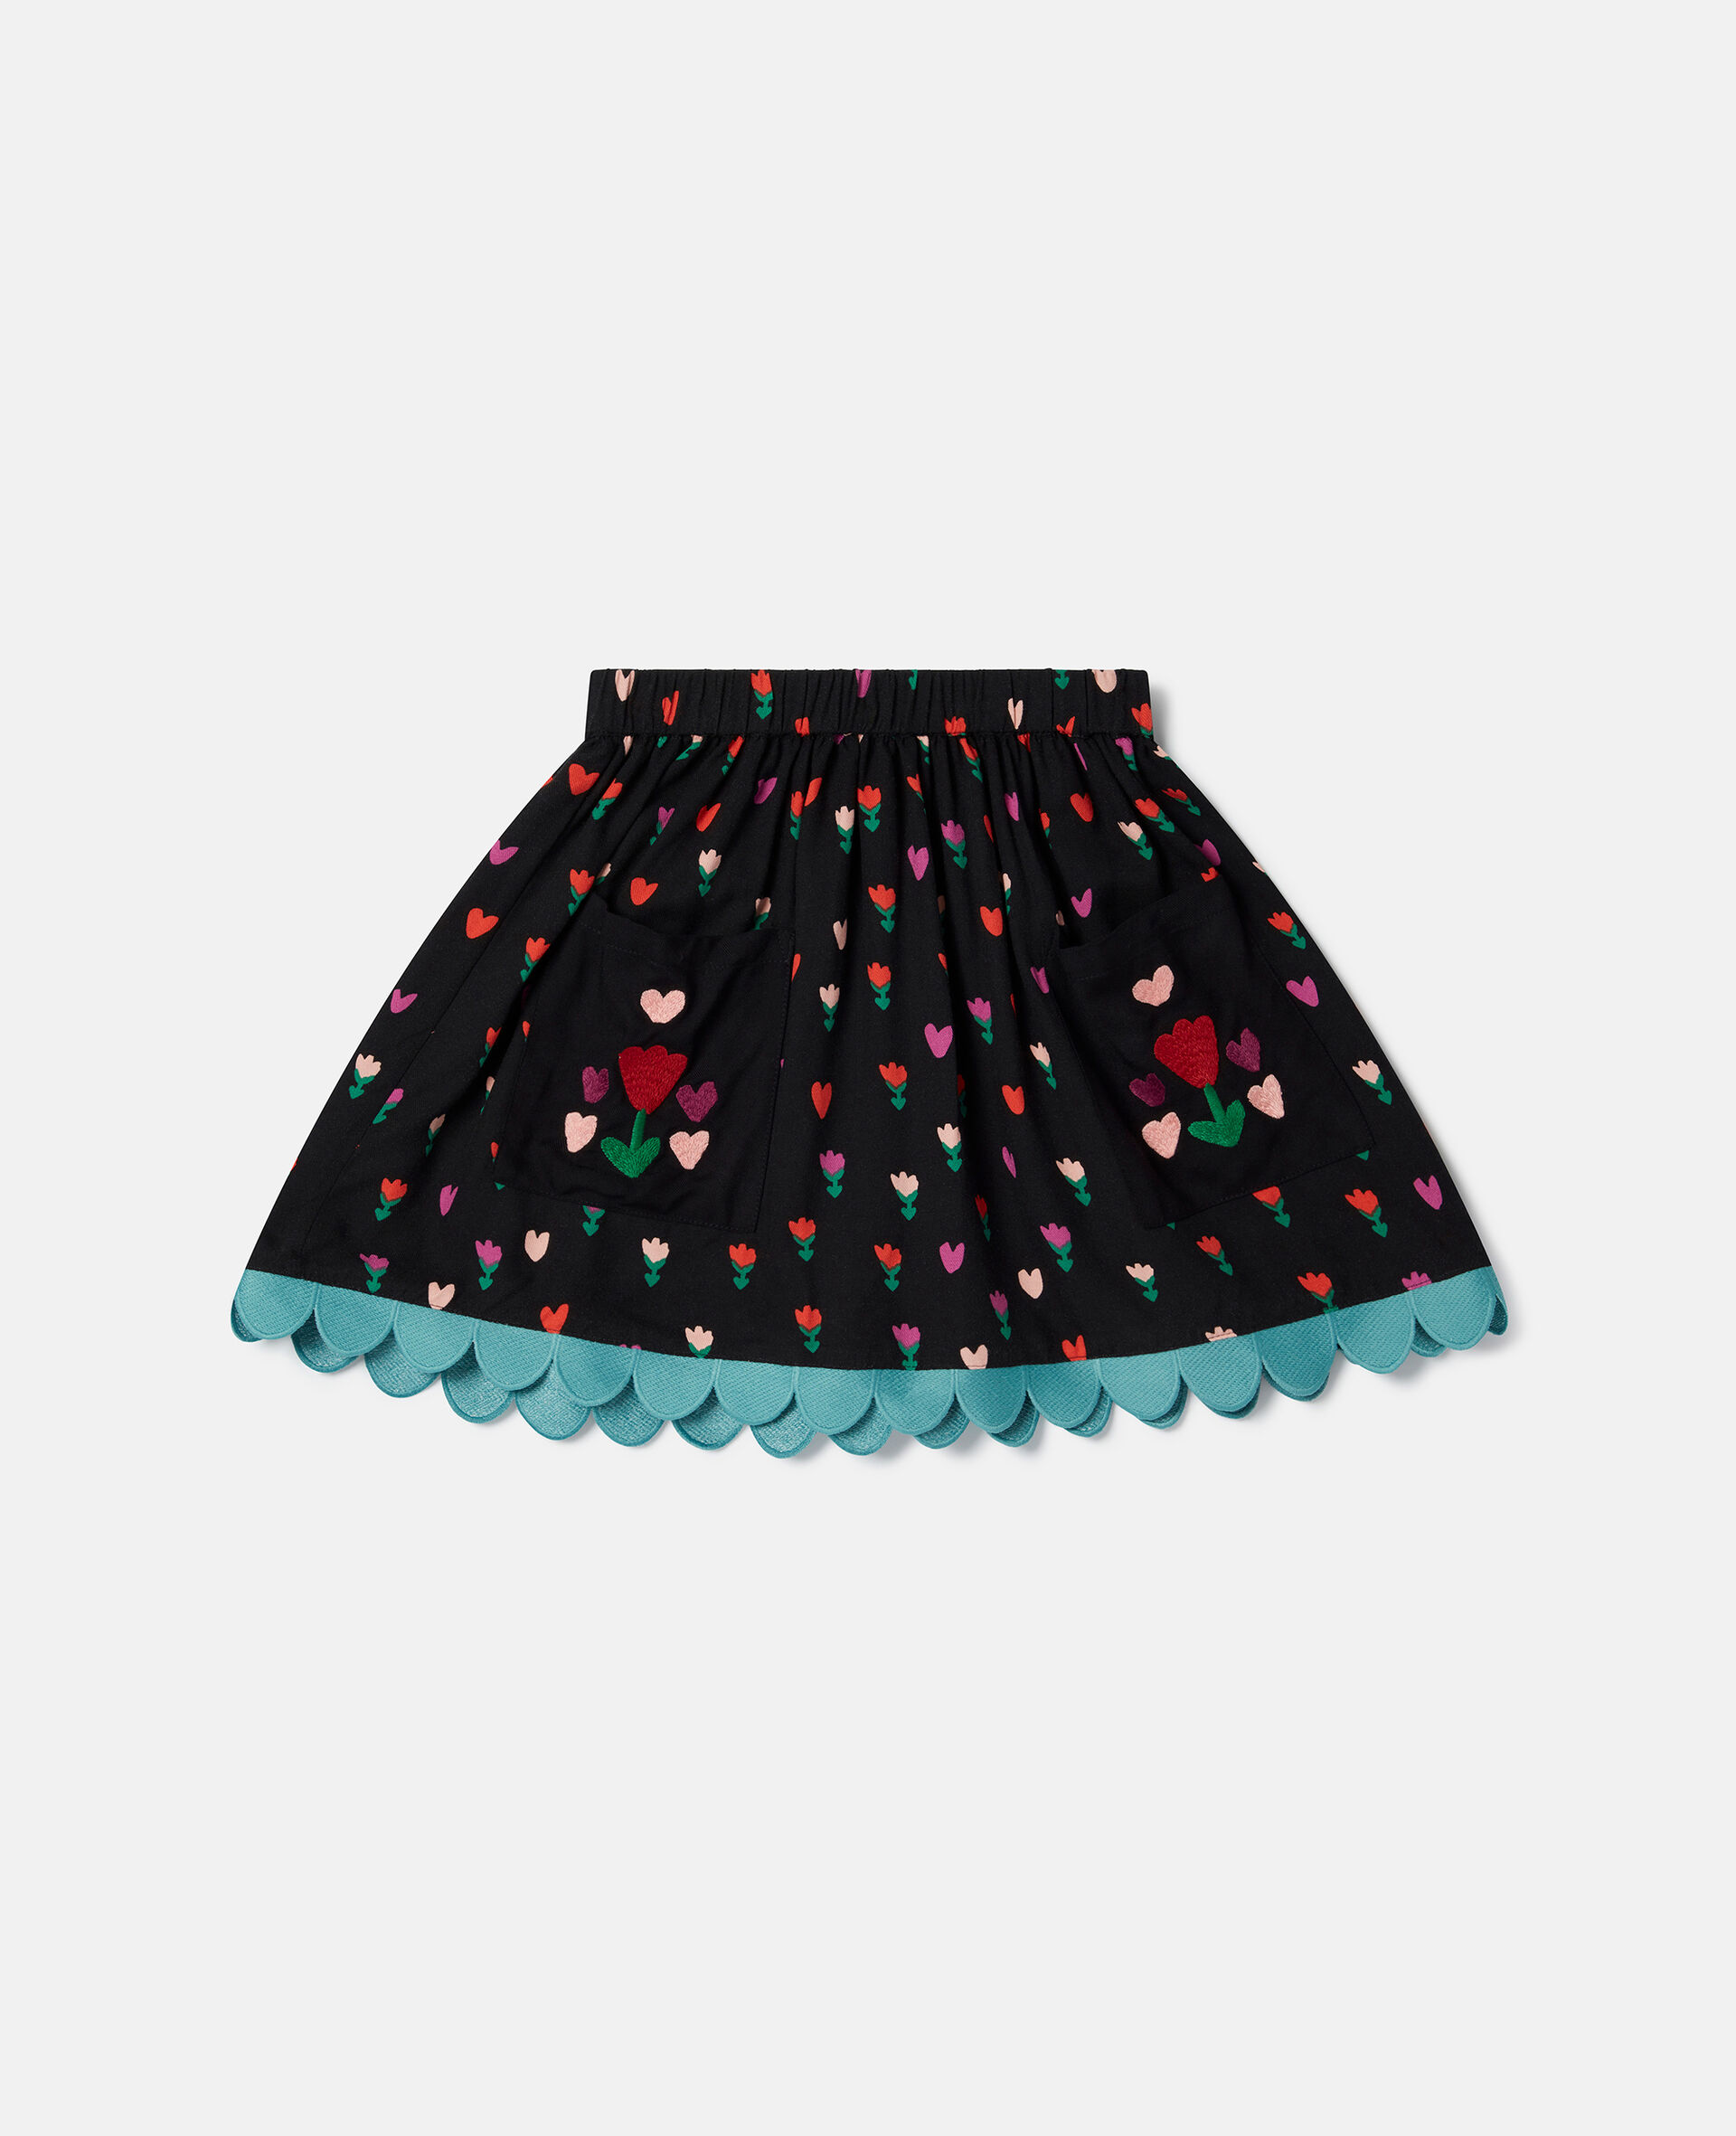 Tulip Print Skater Skirt-Black-medium